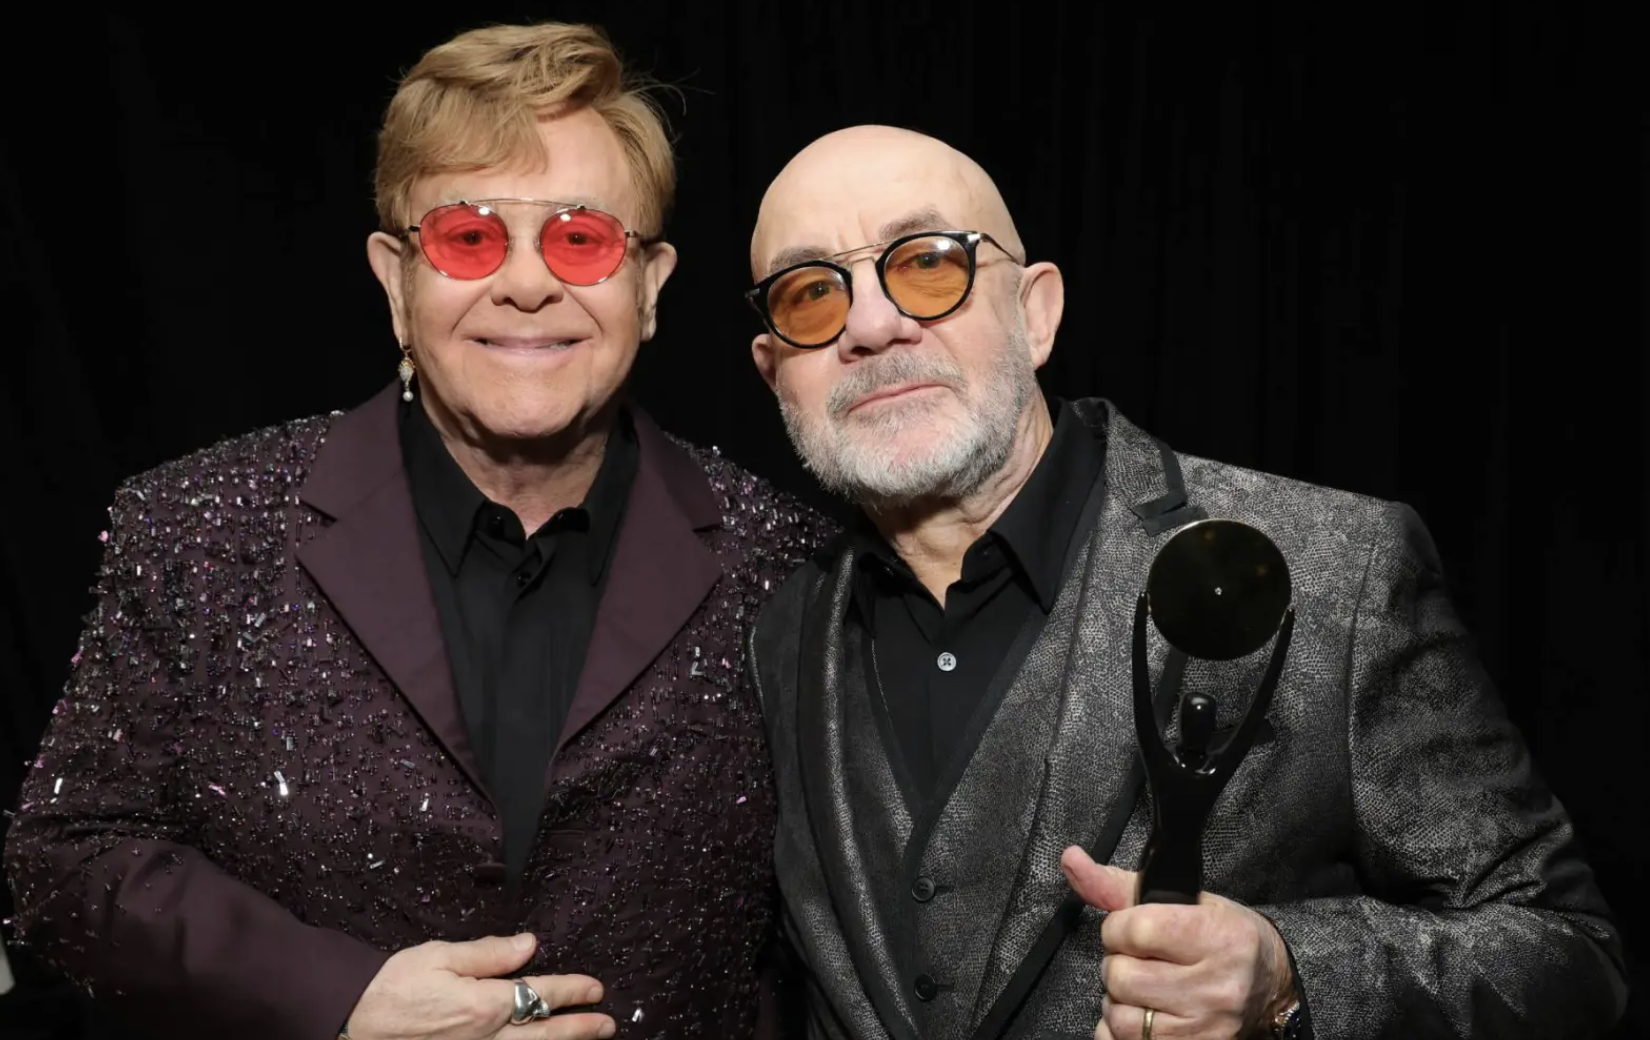 Elton John acaba de terminar un nuevo disco con Bernie Taupin: “Los va a sorprender mucho”